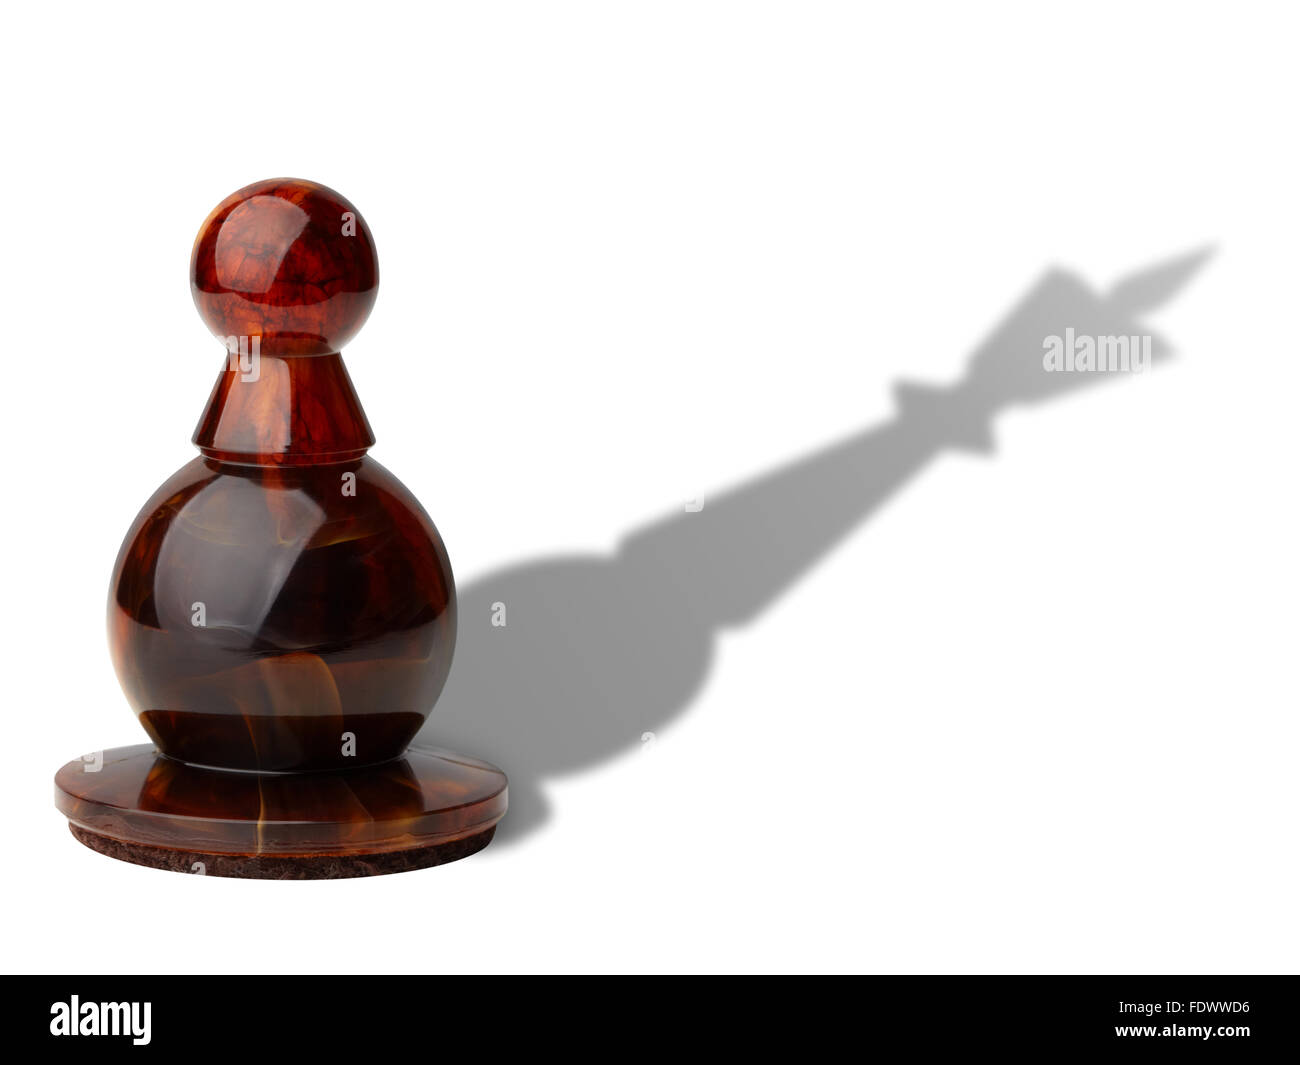 Pedina di scacchi con re's shadow isolati su sfondo bianco, percorso di clipping incluso. Foto Stock